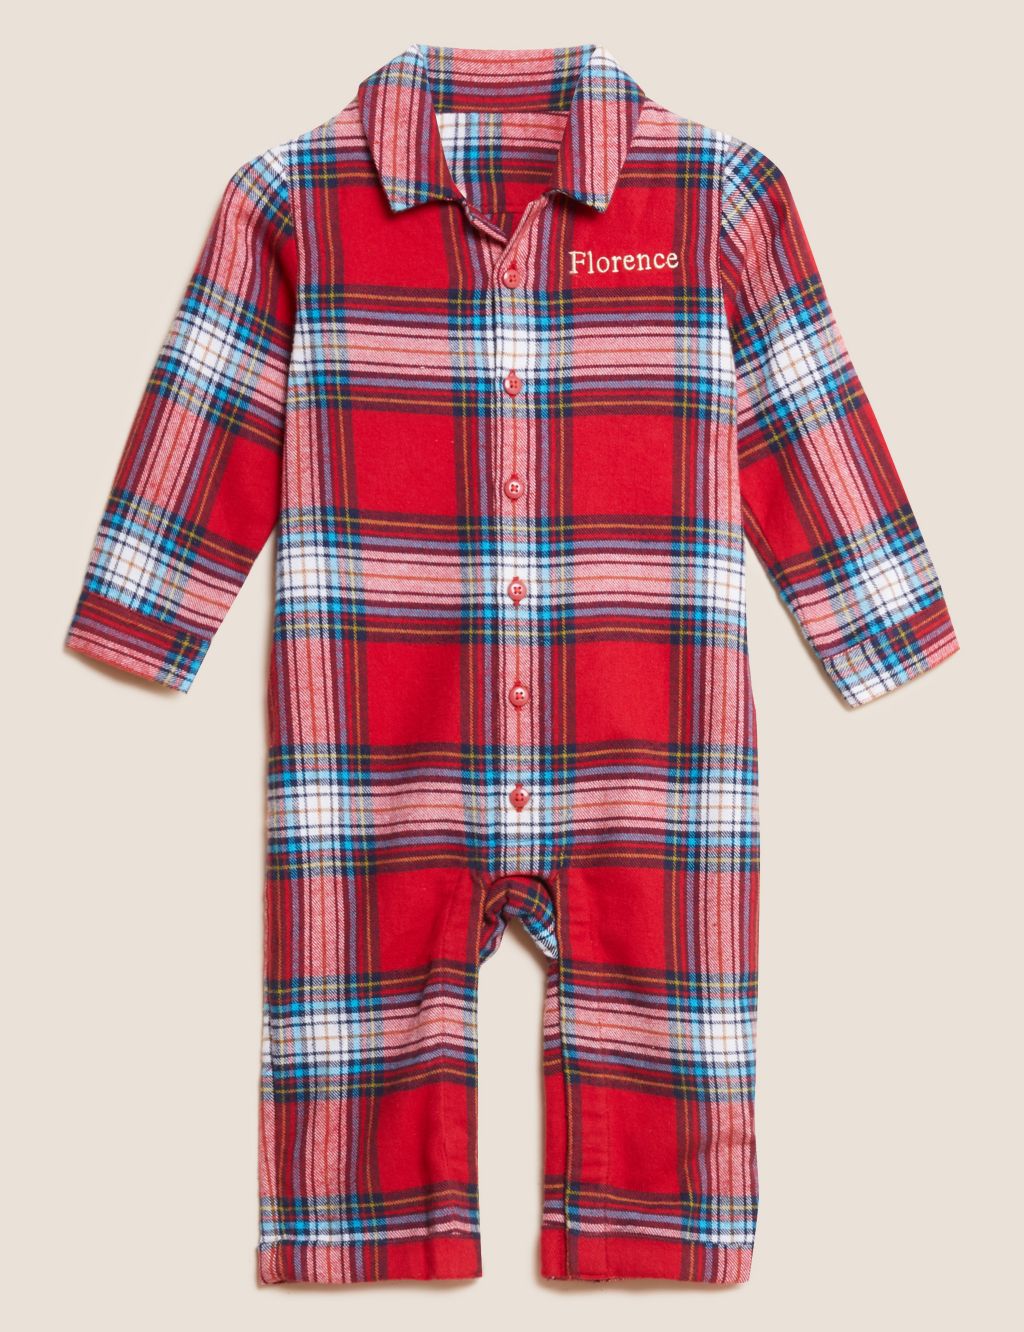 Matching Dog Pajamas -  UK